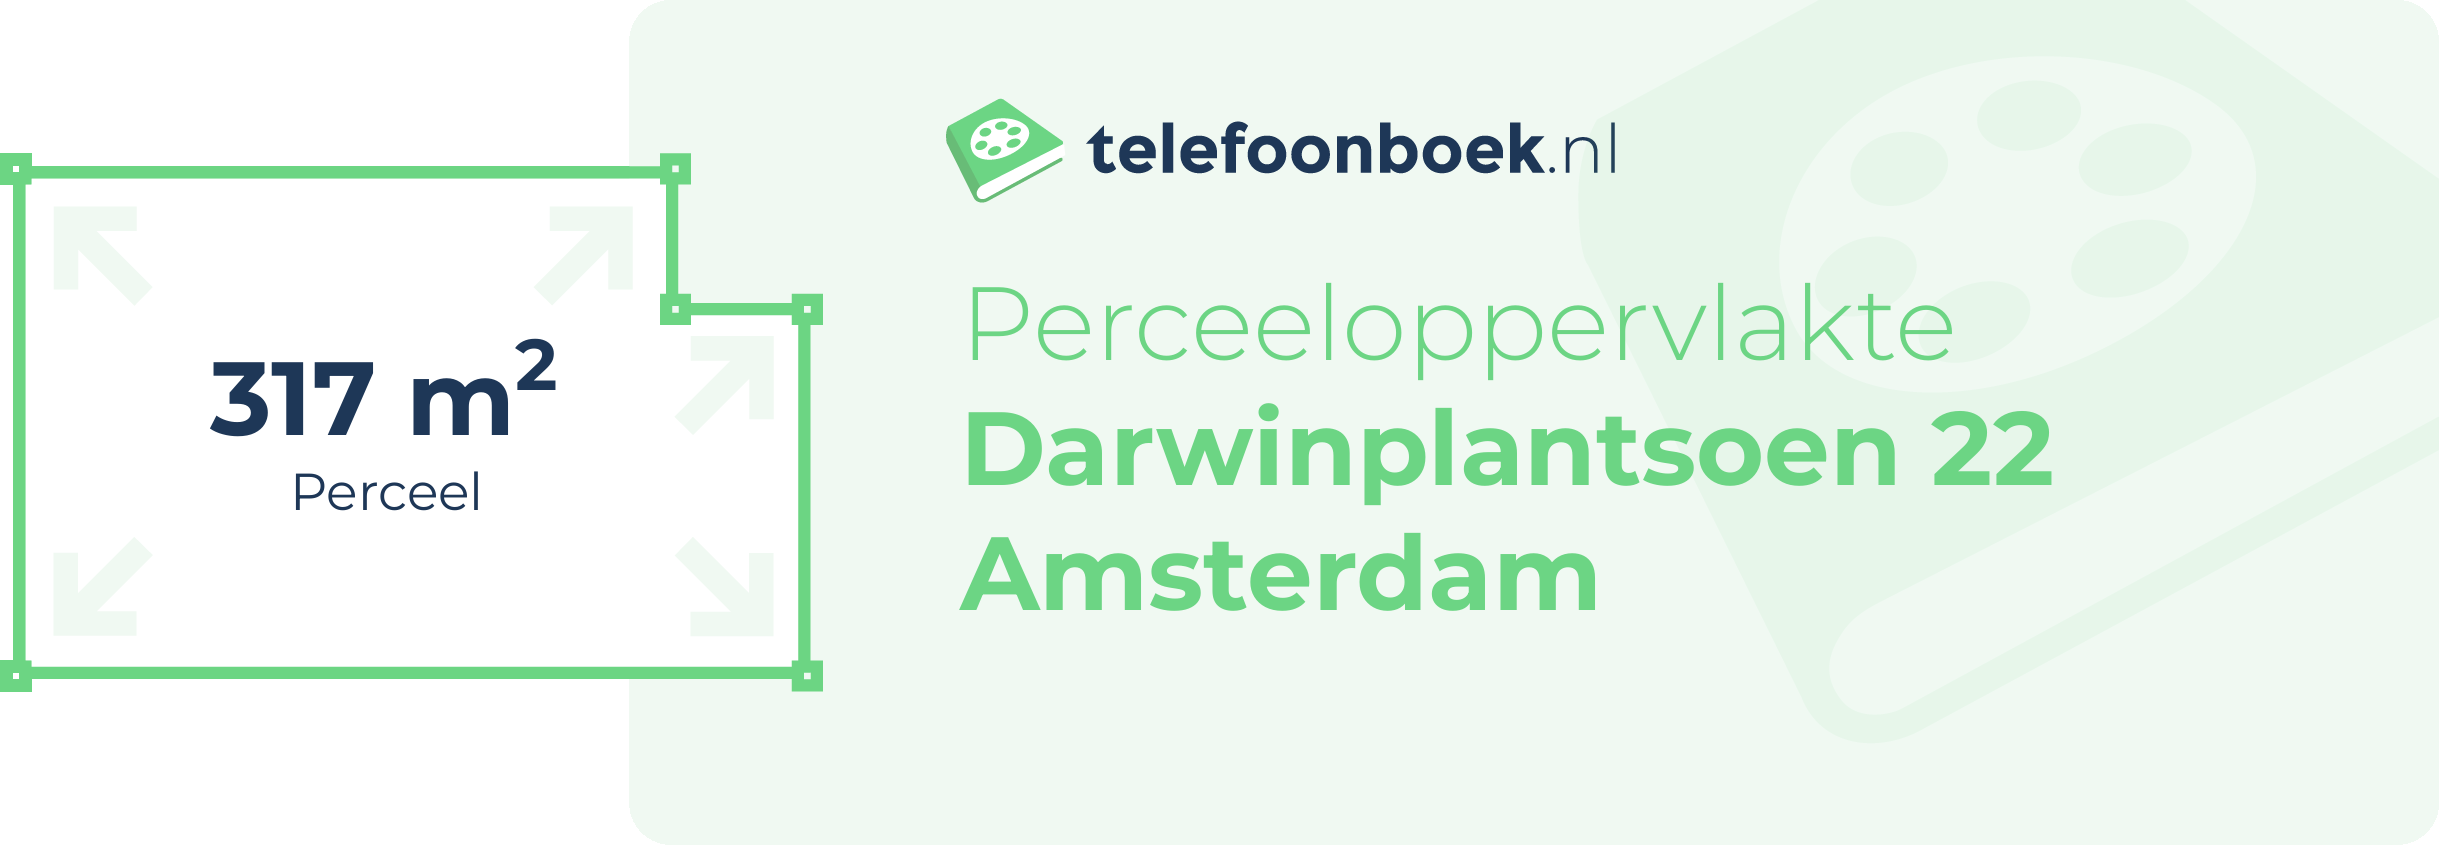 Perceeloppervlakte Darwinplantsoen 22 Amsterdam